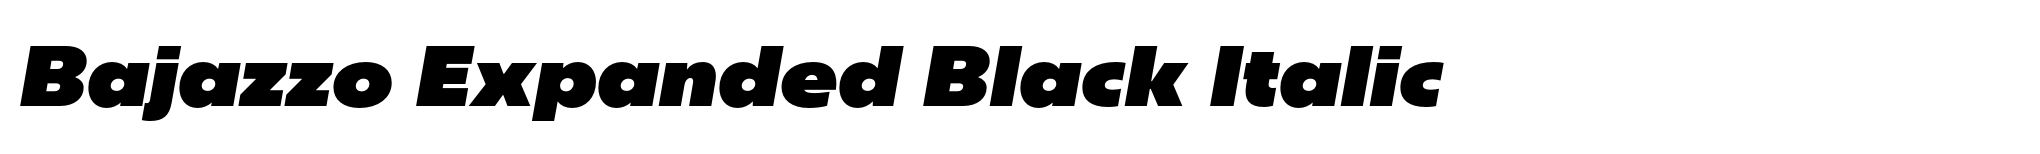 Bajazzo Expanded Black Italic image